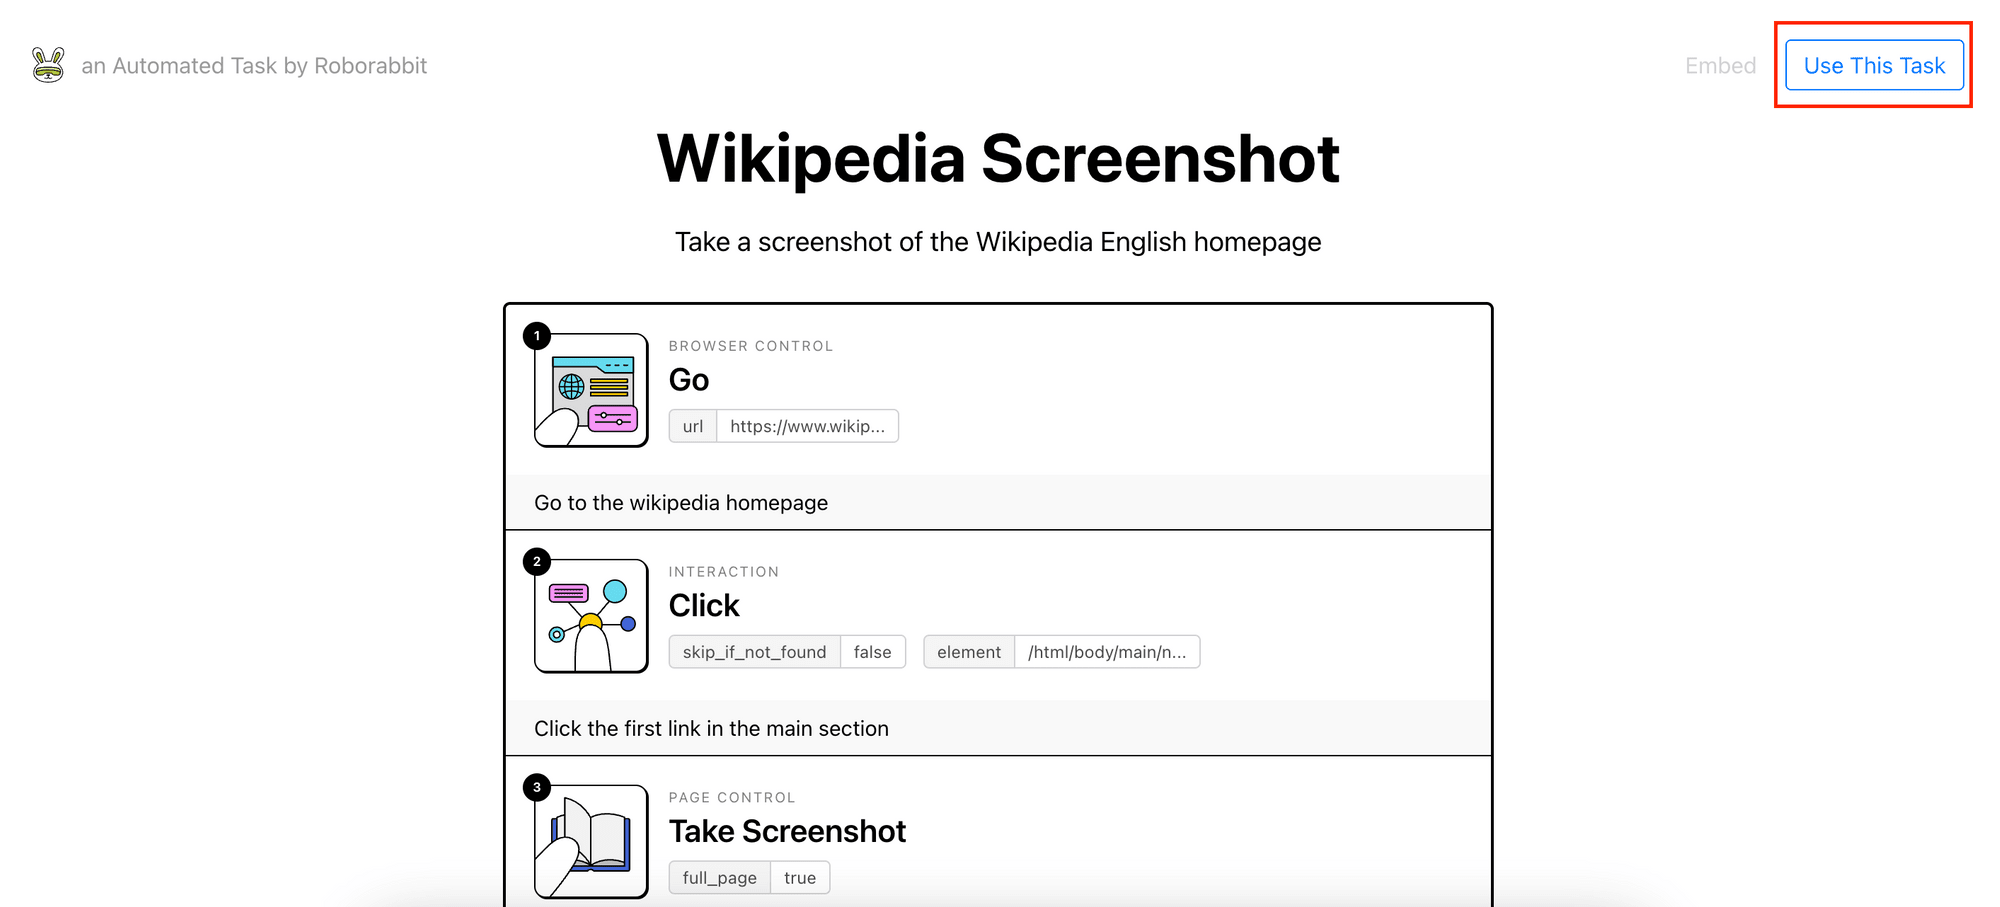 about the "Take Wikipedia Screenshots" task